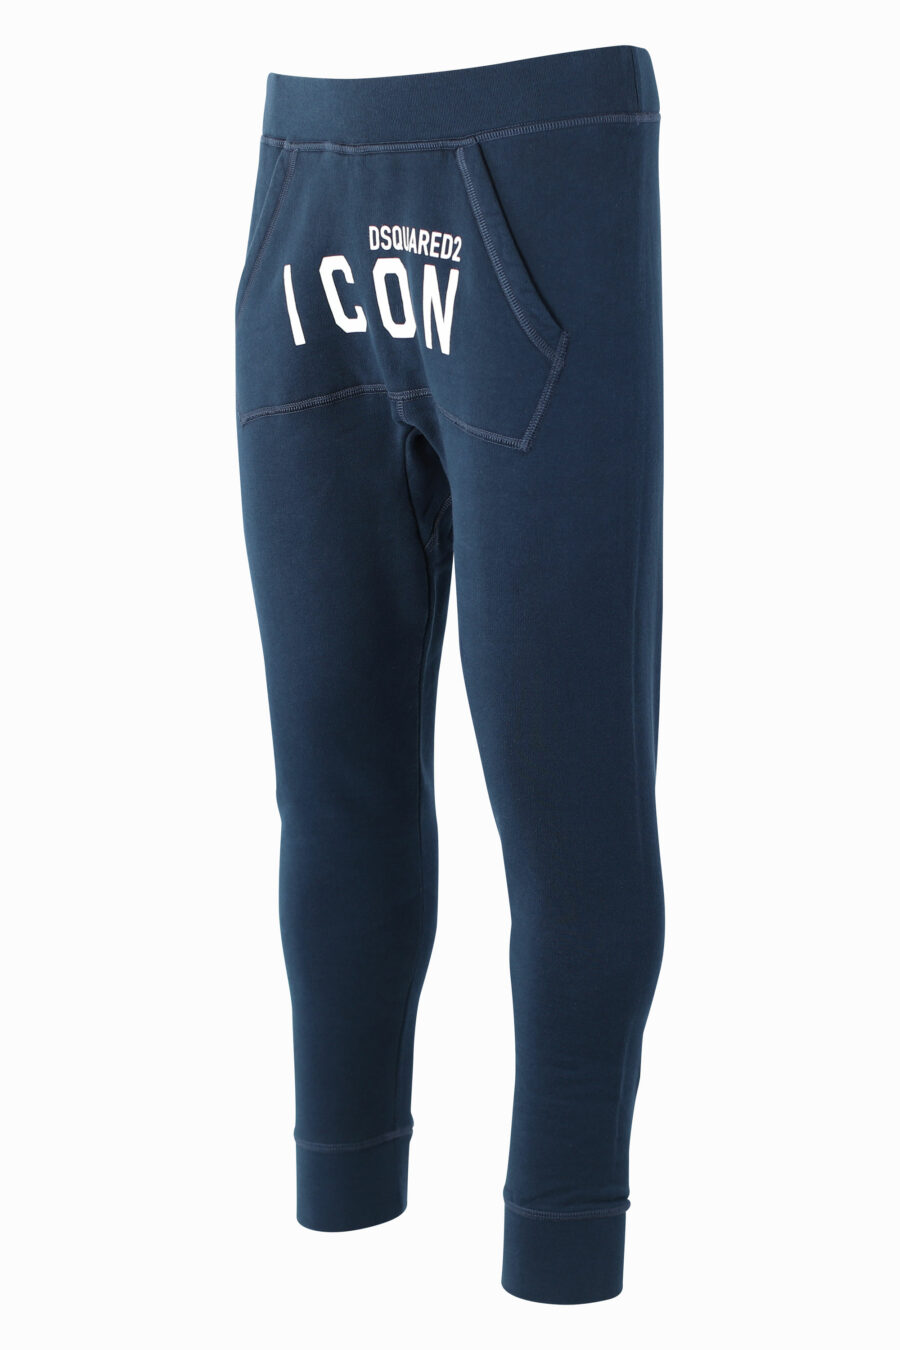 Pantalón de chándal azul con doble logo "icon" frontal - IMG 1022